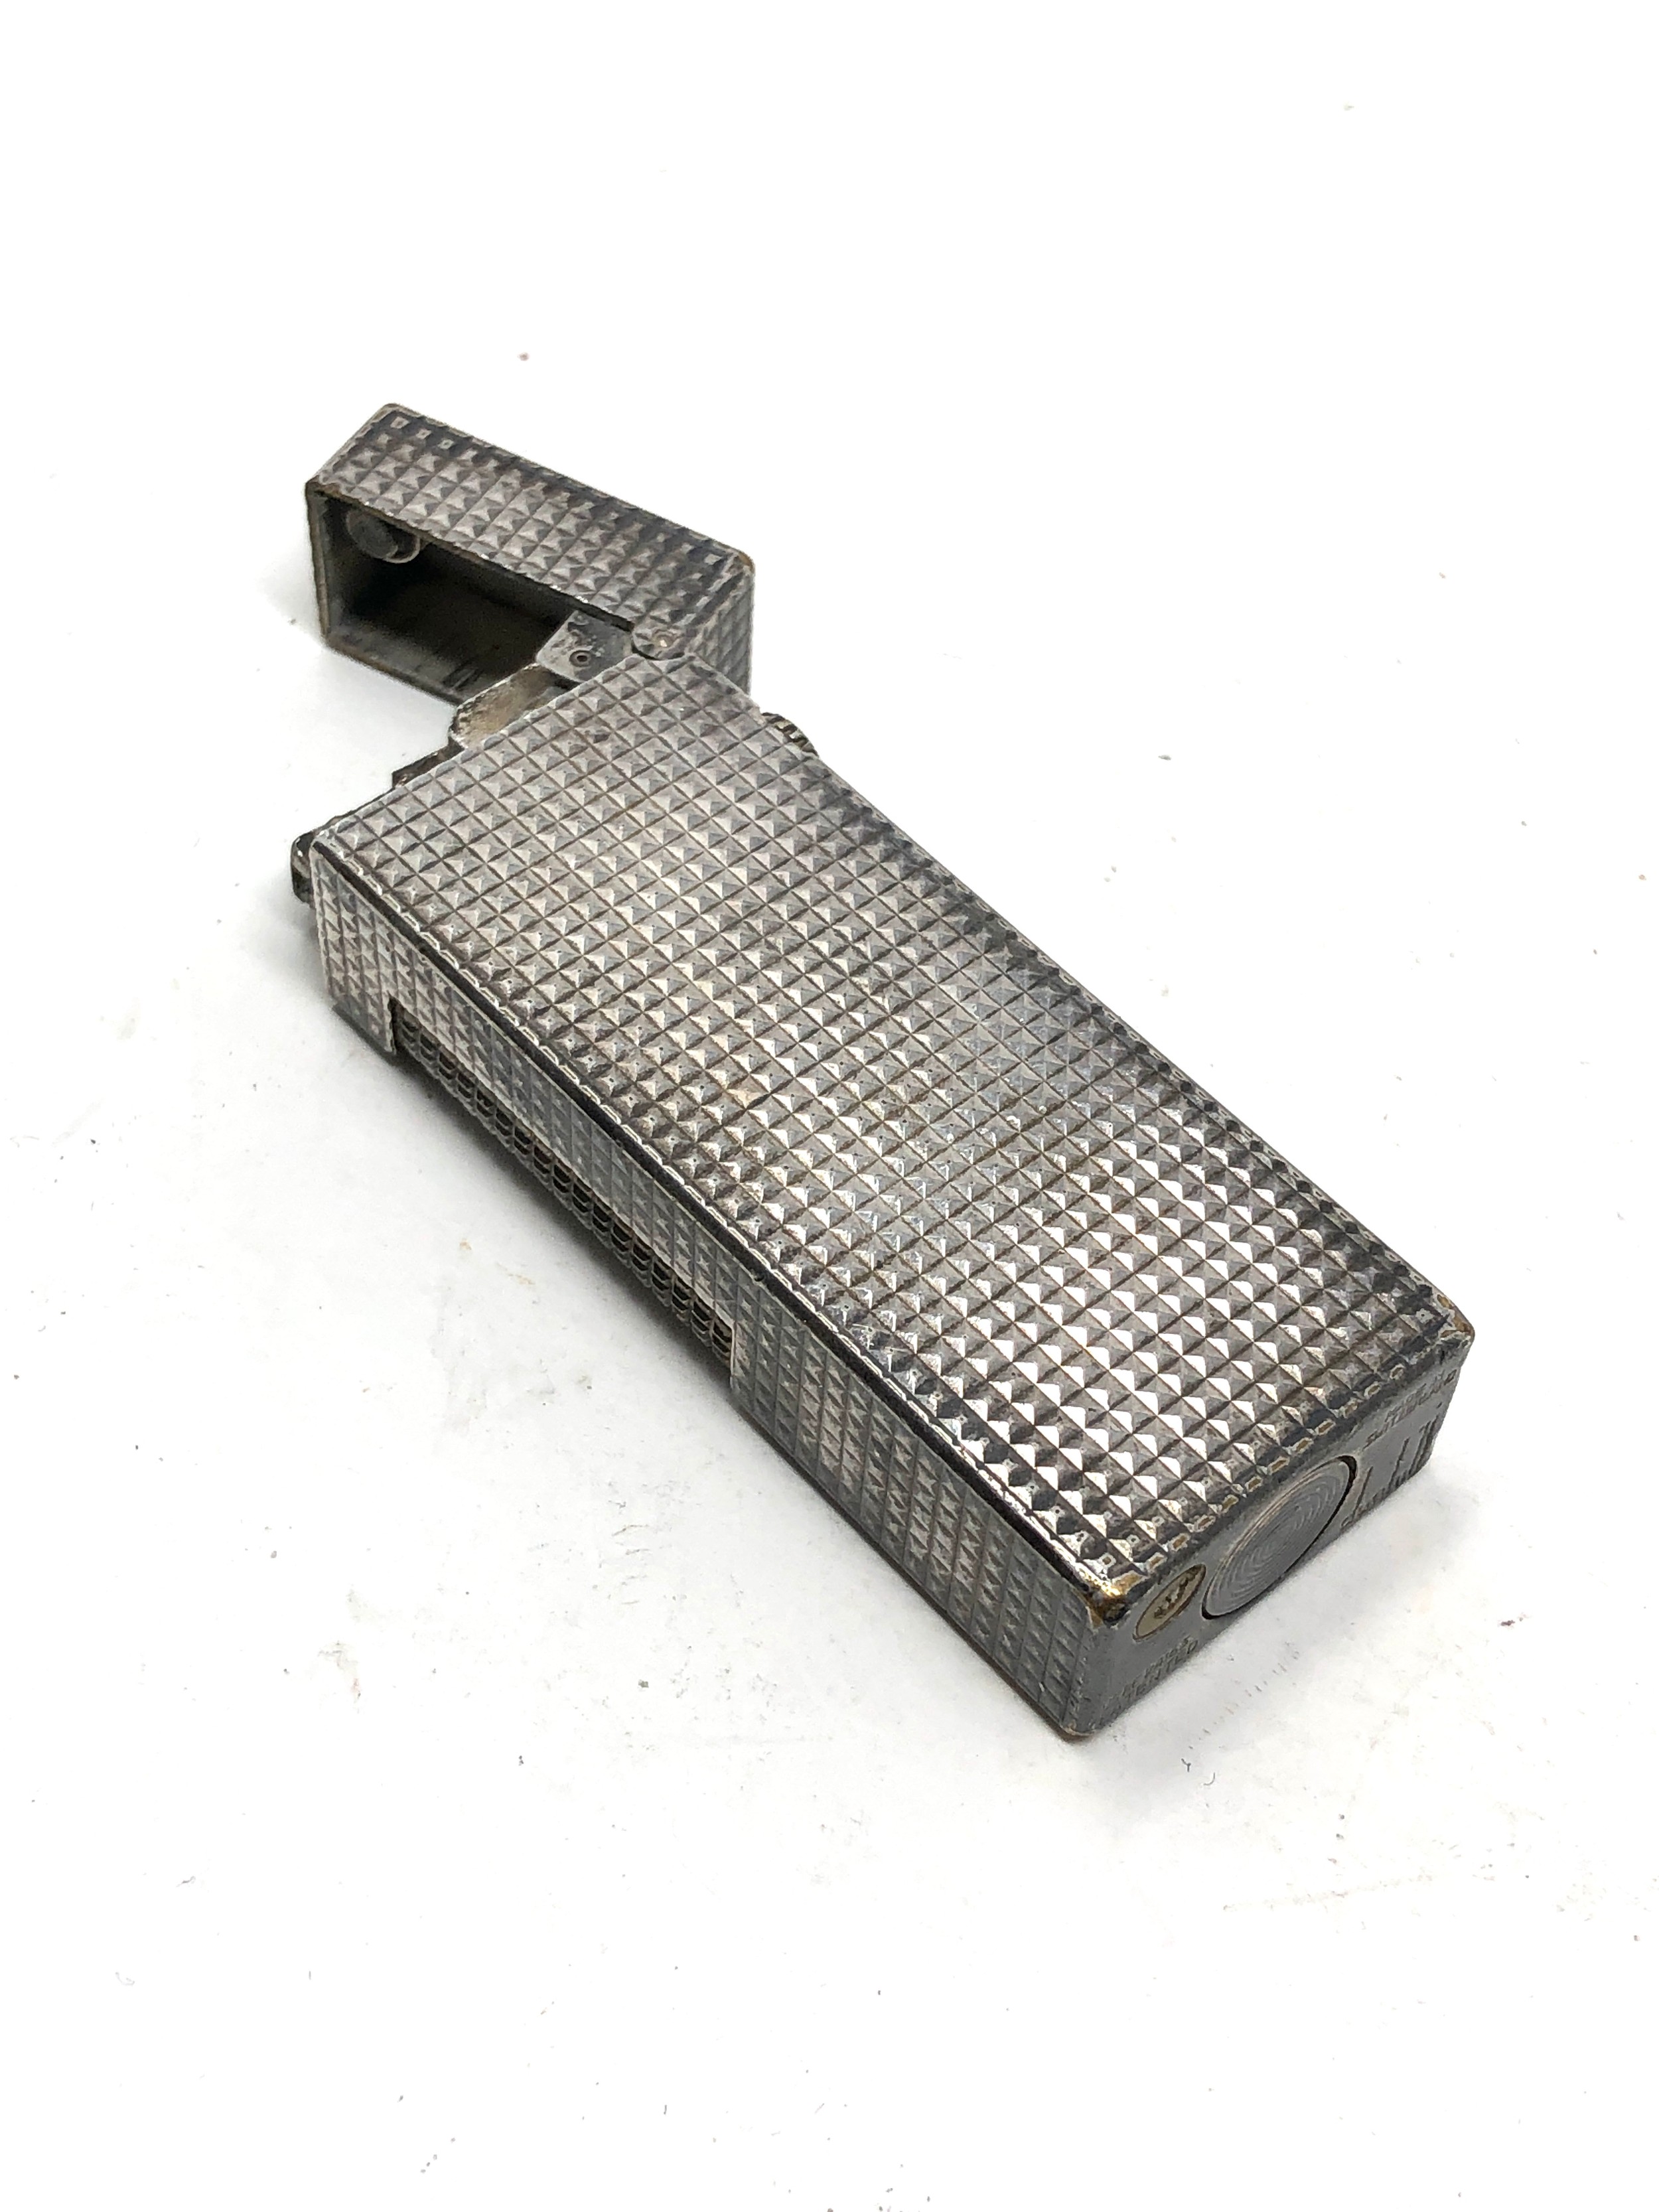 Vintage Dunhill cigarette lighter with lighter flints - Image 2 of 4